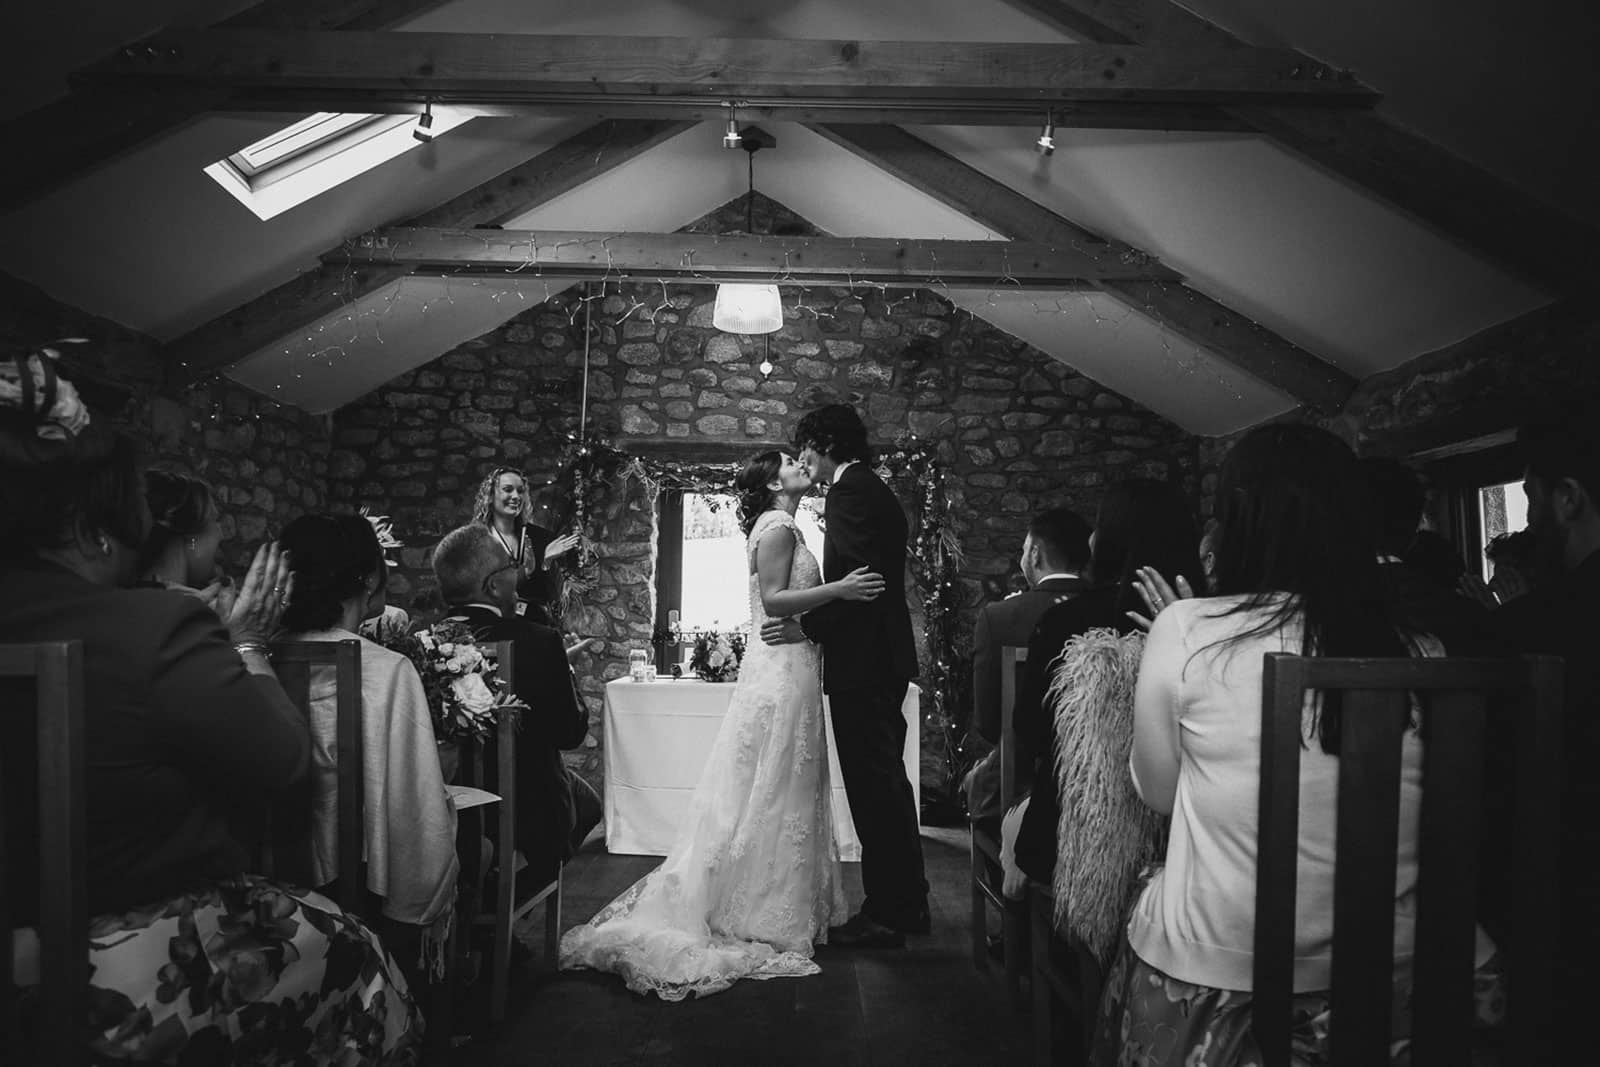 Wedding ceremony at Knightor Winery vineyard wedding venue in Cornwall, as featured on eeek! weddings